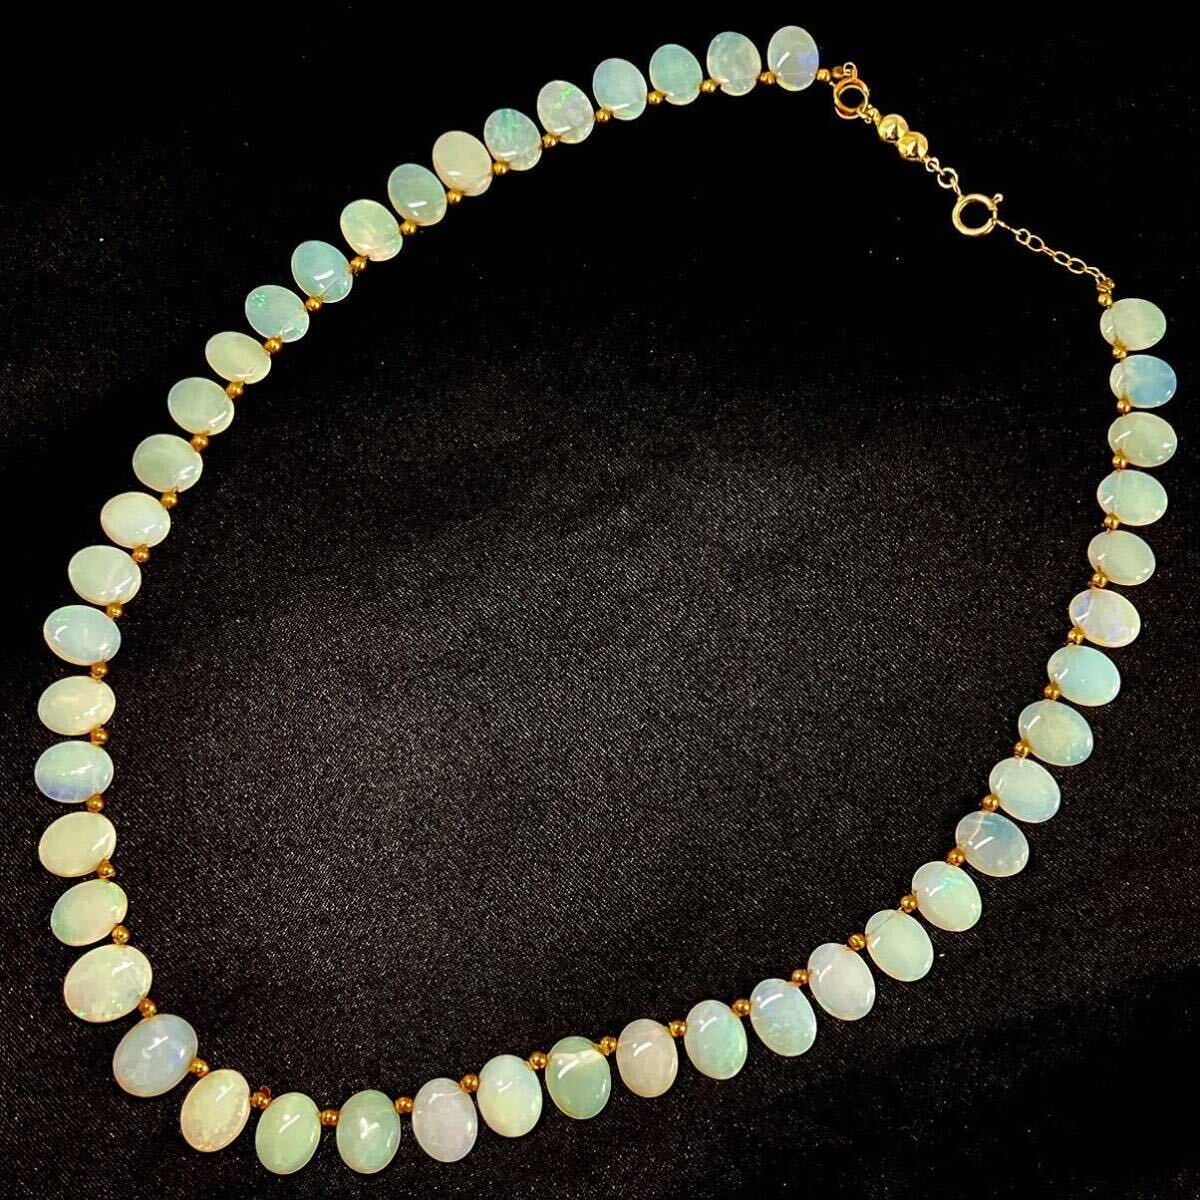 ［オパールネックレス］a ◎重量約14.6g opal necklace water white ホワイト 約46.5cm K18 遊色 合成 accessory jewelry silver DC0の画像3